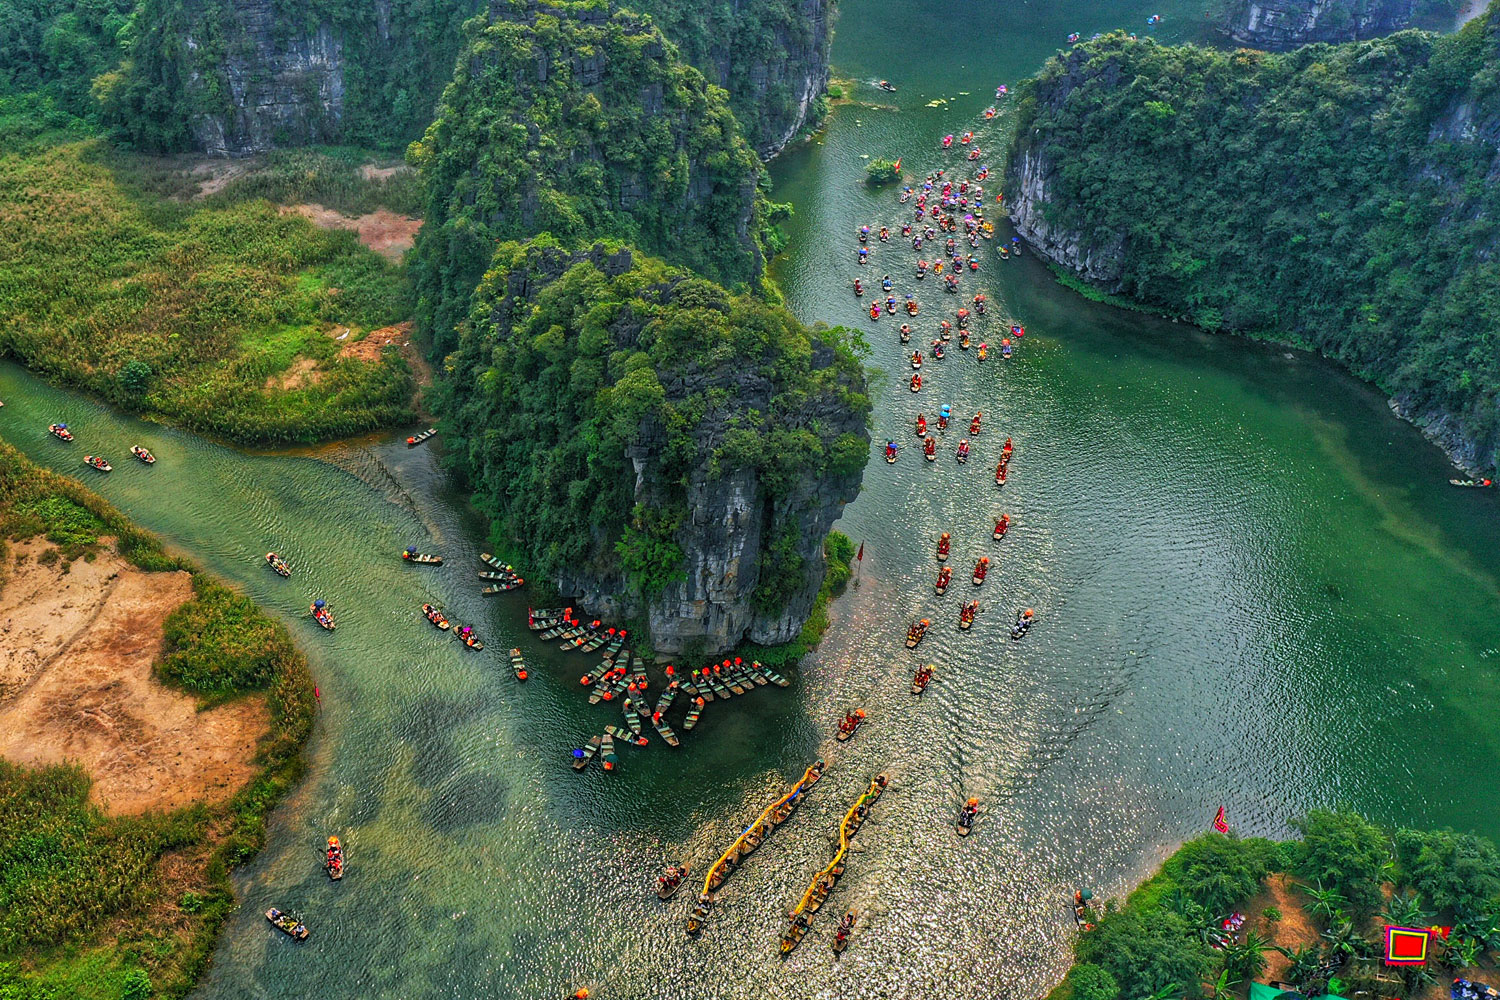 Điểm danh 9 di sản văn hóa, thiên nhiên thế giới nổi tiếng tại Việt Nam 2023 | Tháng 6 tìm về mảnh Đất cố đô Hoa Lư Ninh Bình - Du lịch Việt Nam